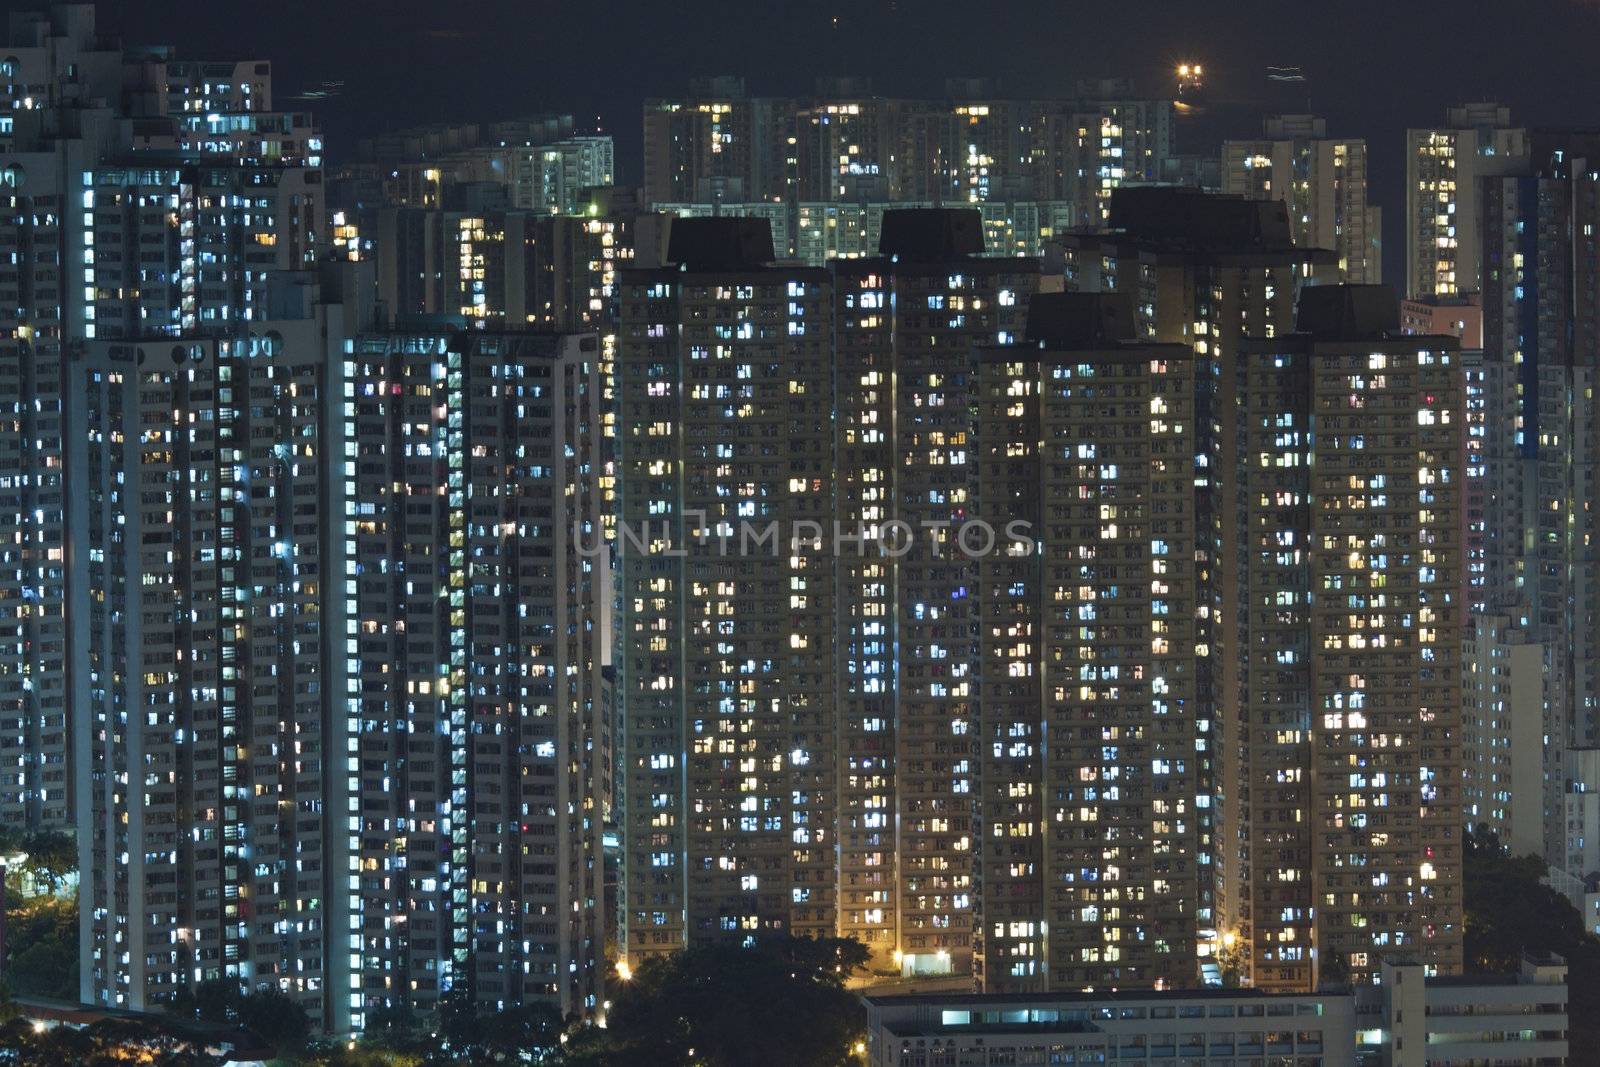 Hong Kong crowded apartments at night by kawing921